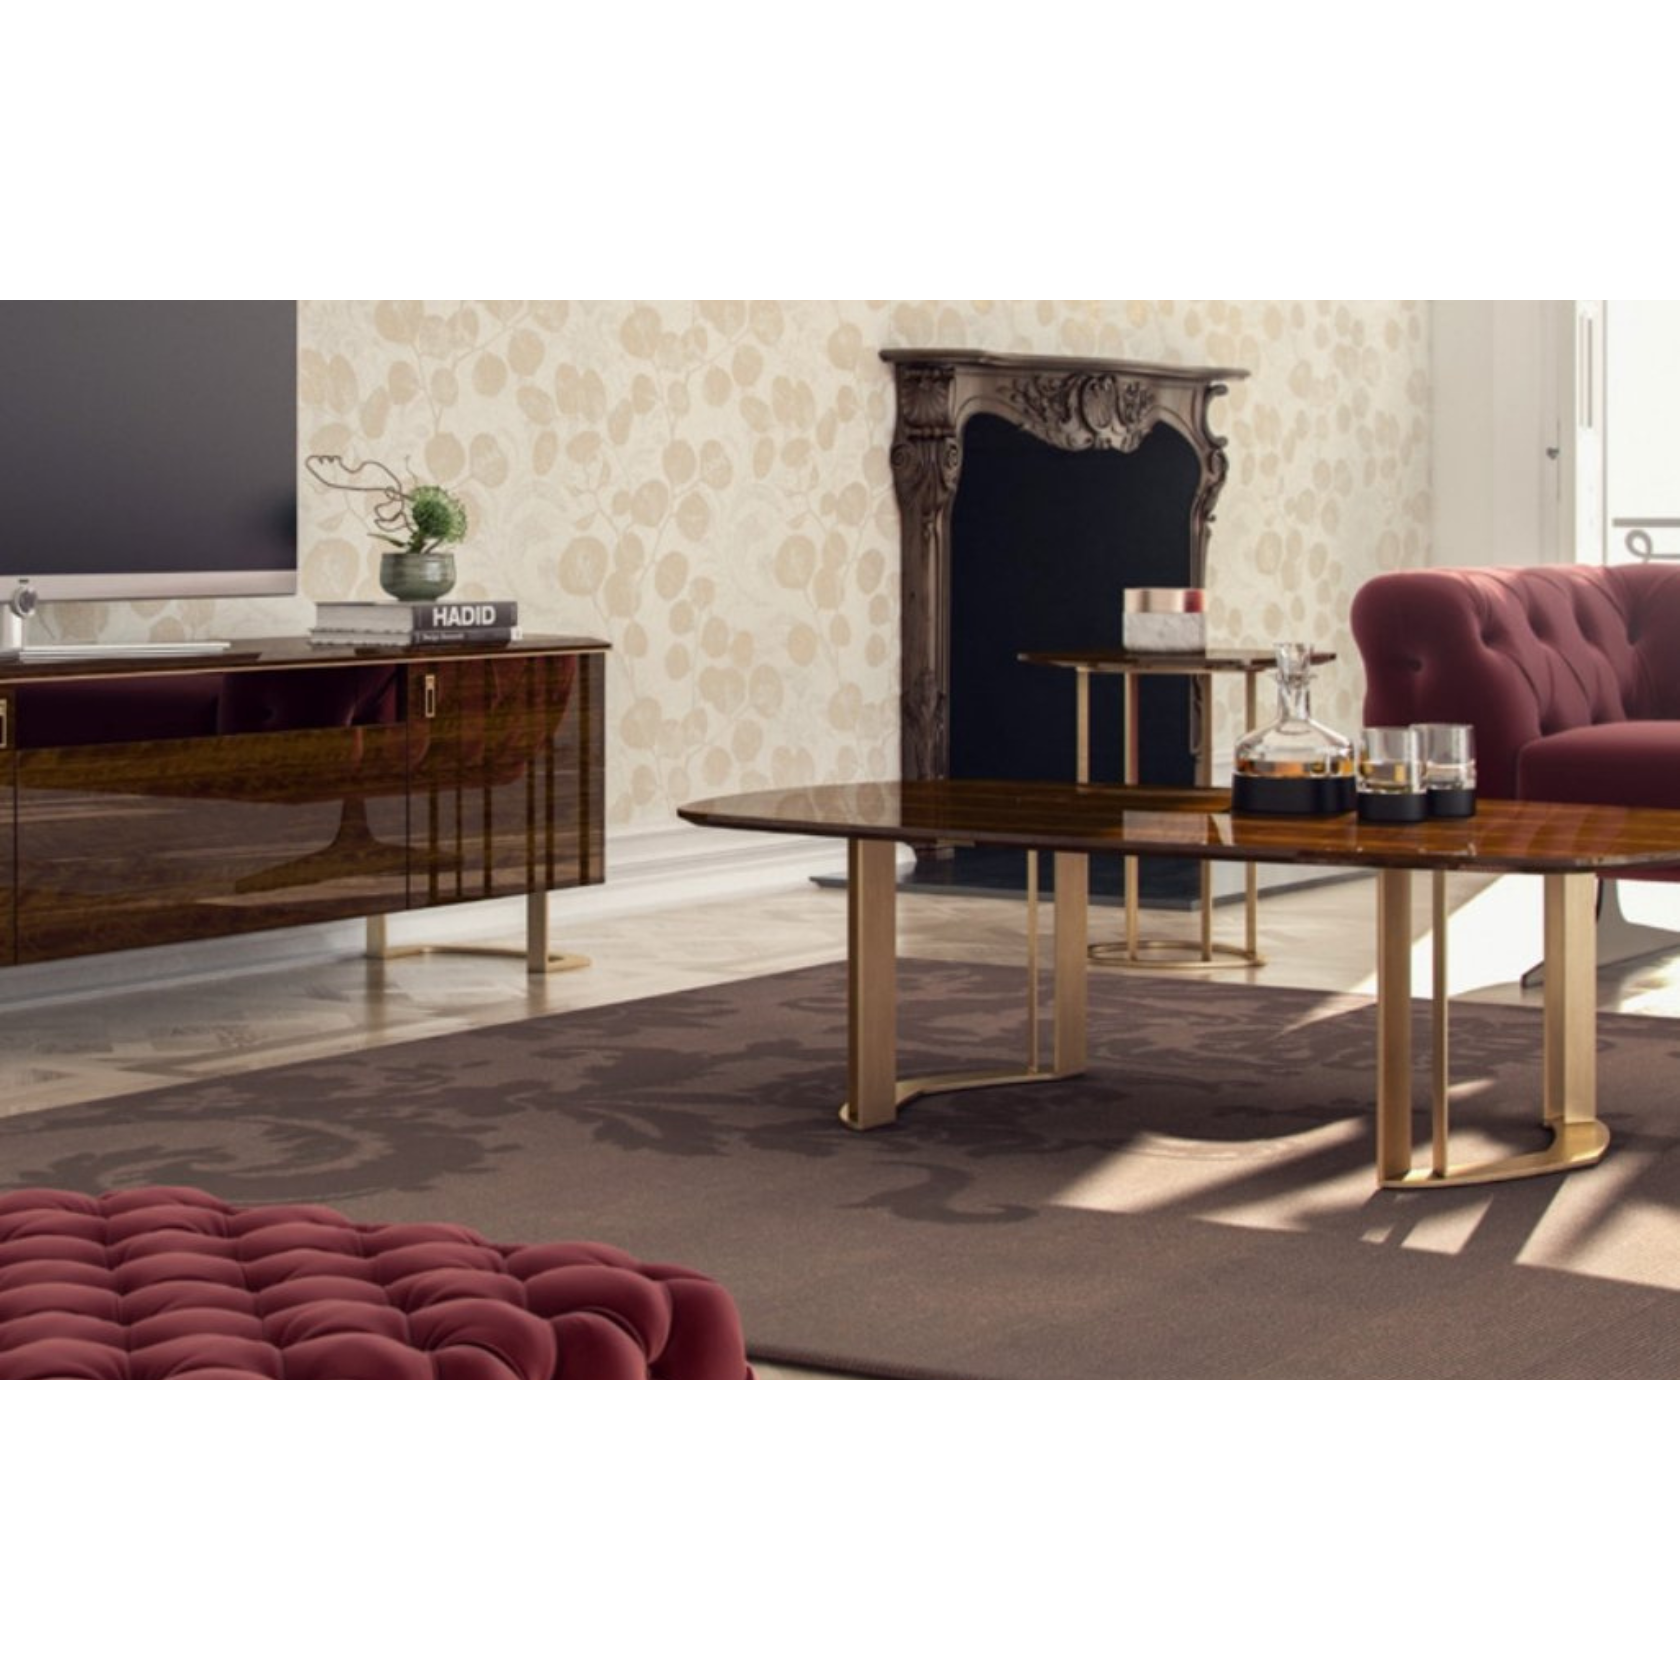 Favor Soffbord - LINE Furniture Group